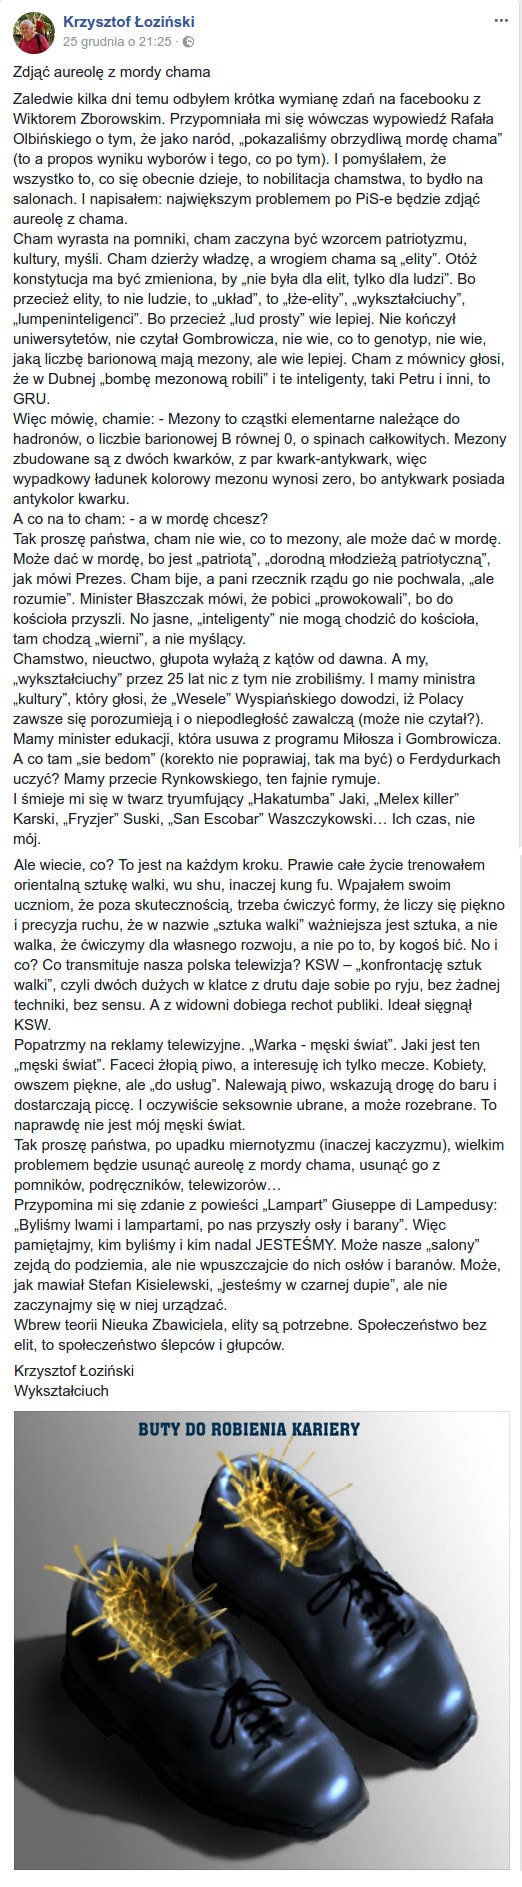 tekst wypowiedzi Krzysztofa Łozińskiego na facebooku